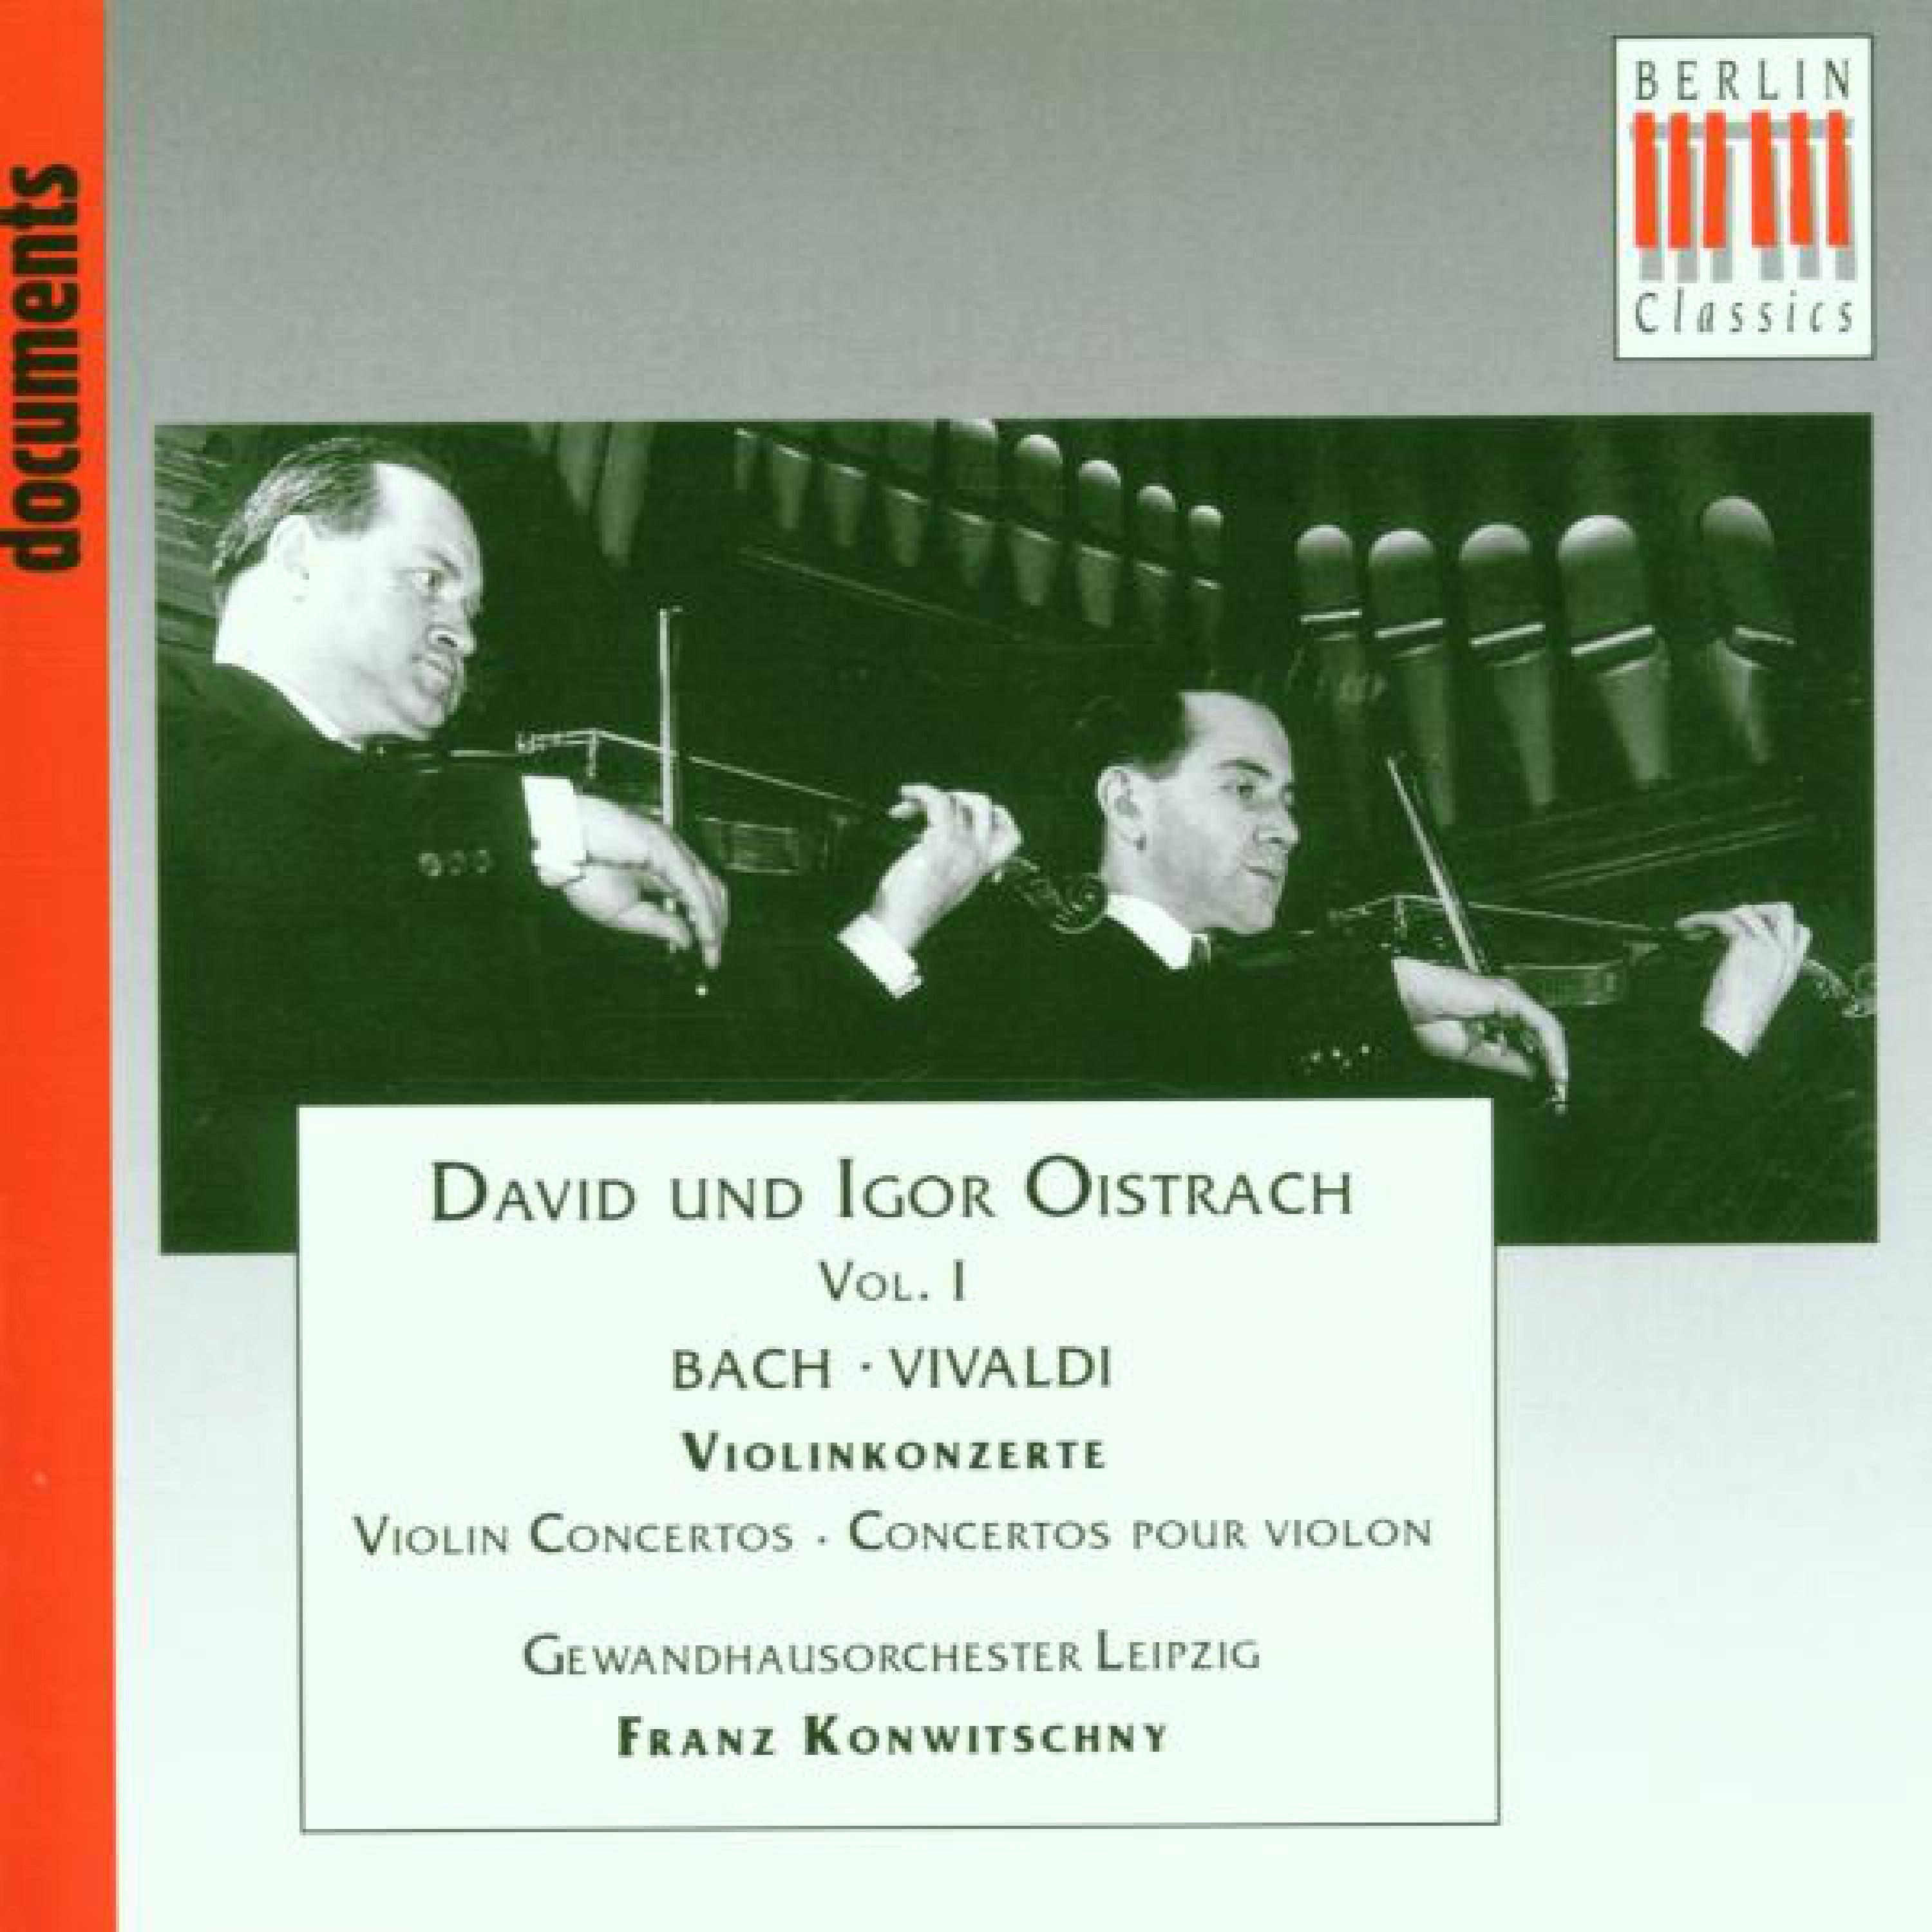 Violin Concerto No. 2 in E Major BWV 1042: 2. Adagio